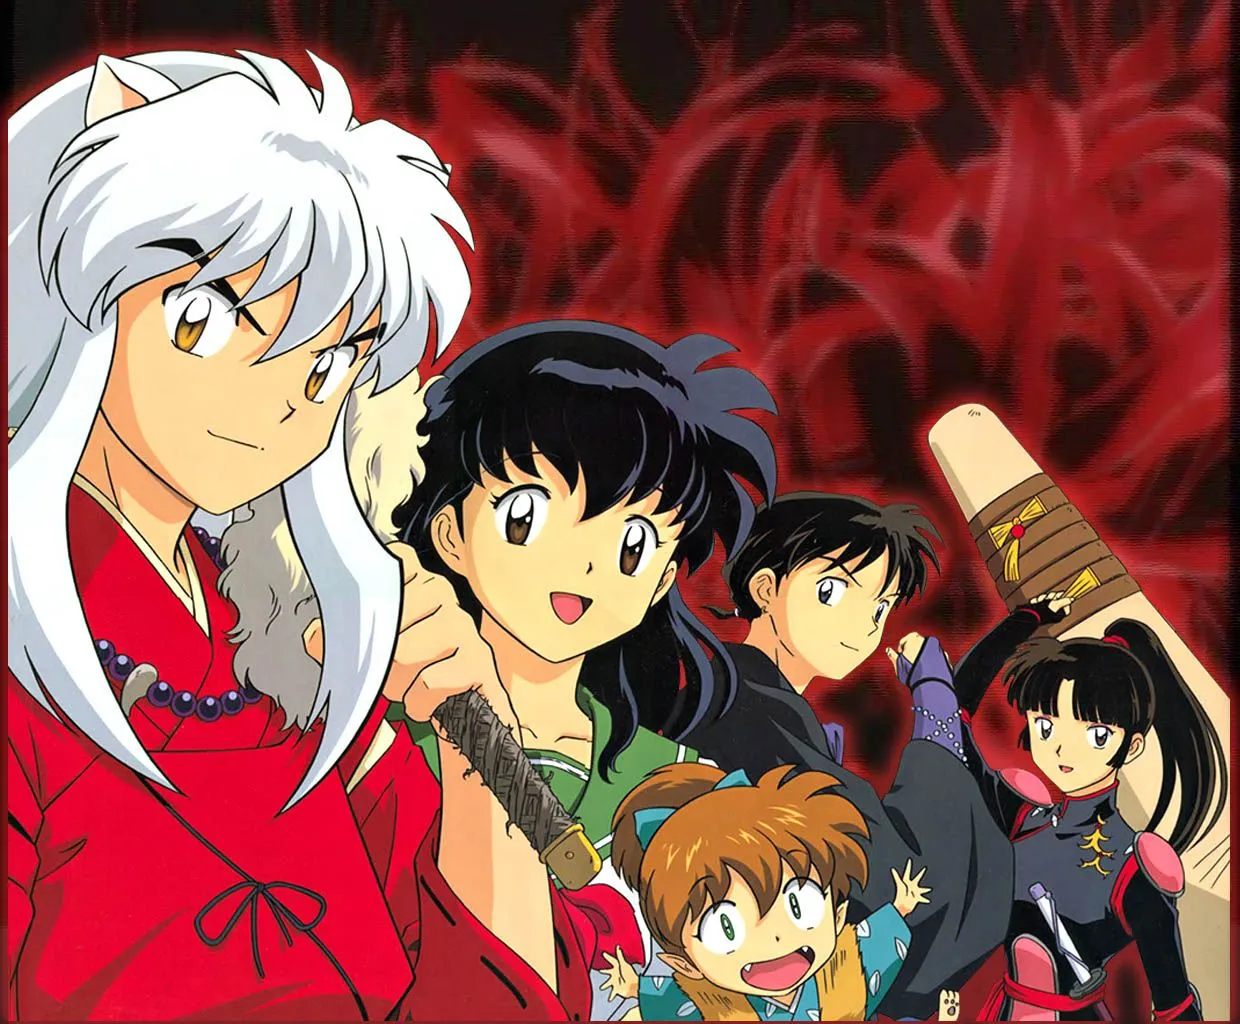 Mundo Anime.: Los 20 mejores animes de la historia (según los ...